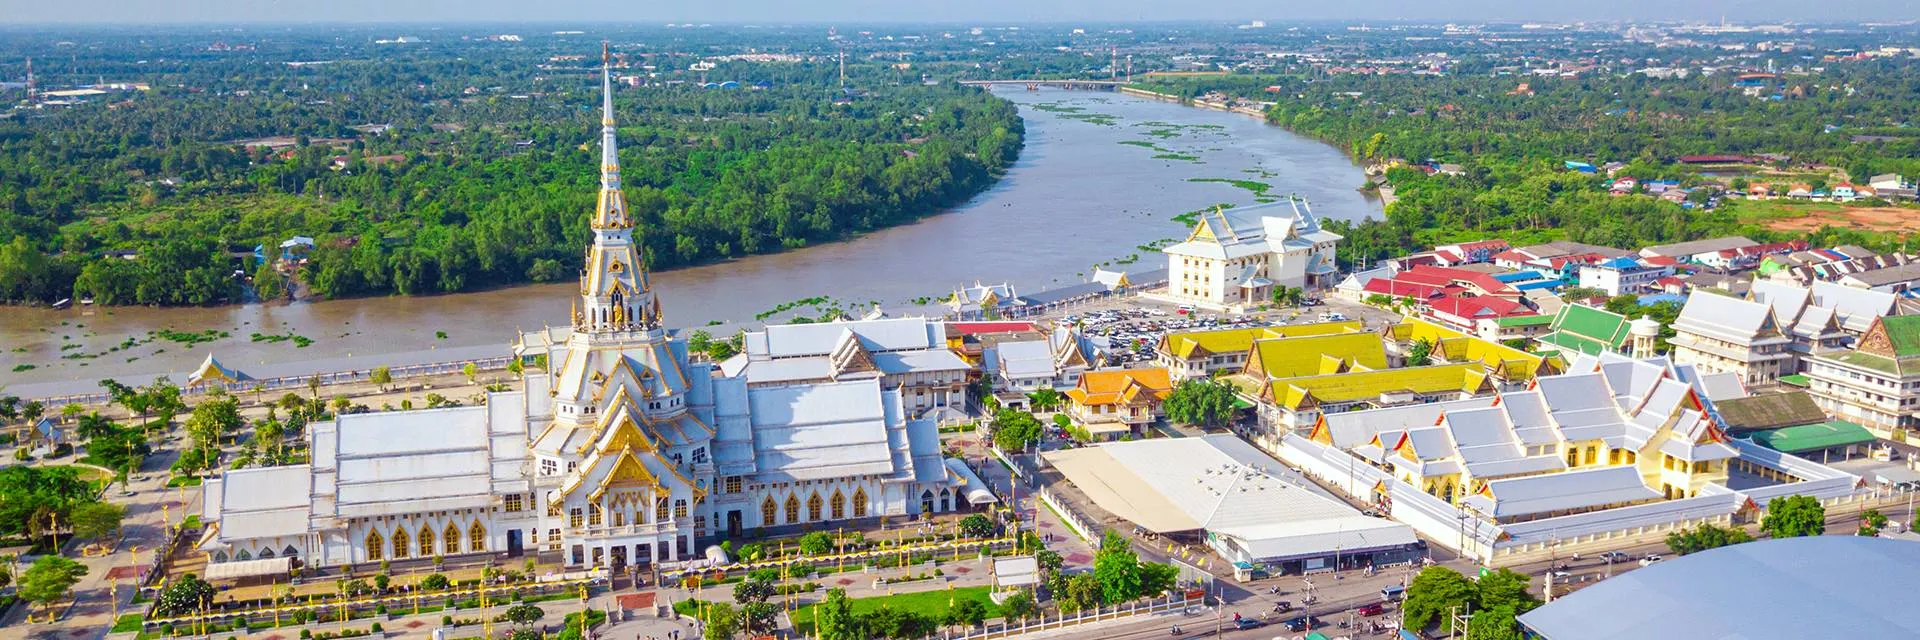 อำเภอเมืองฉะเชิงเทรา วิวมุมสูง (ที่มา: tourismthailand)